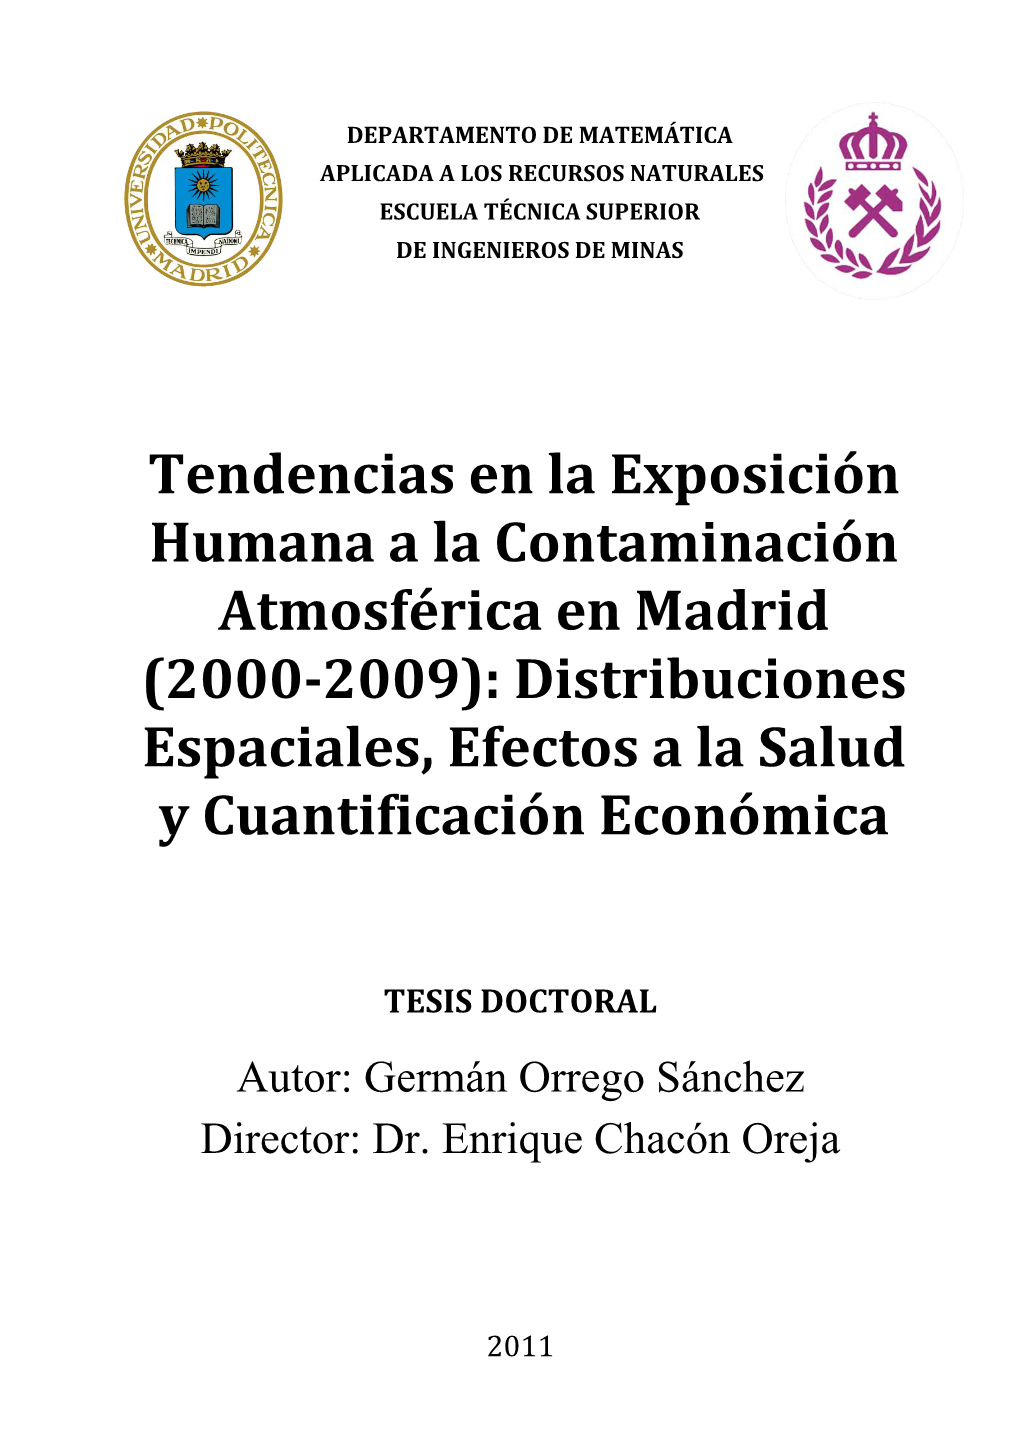 Tendencias En La Exposición Humana a La Contaminación Atmosférica En Madrid (2000-2009): Distribuciones Espaciales, Efectos a La Salud Y Cuantificación Económica